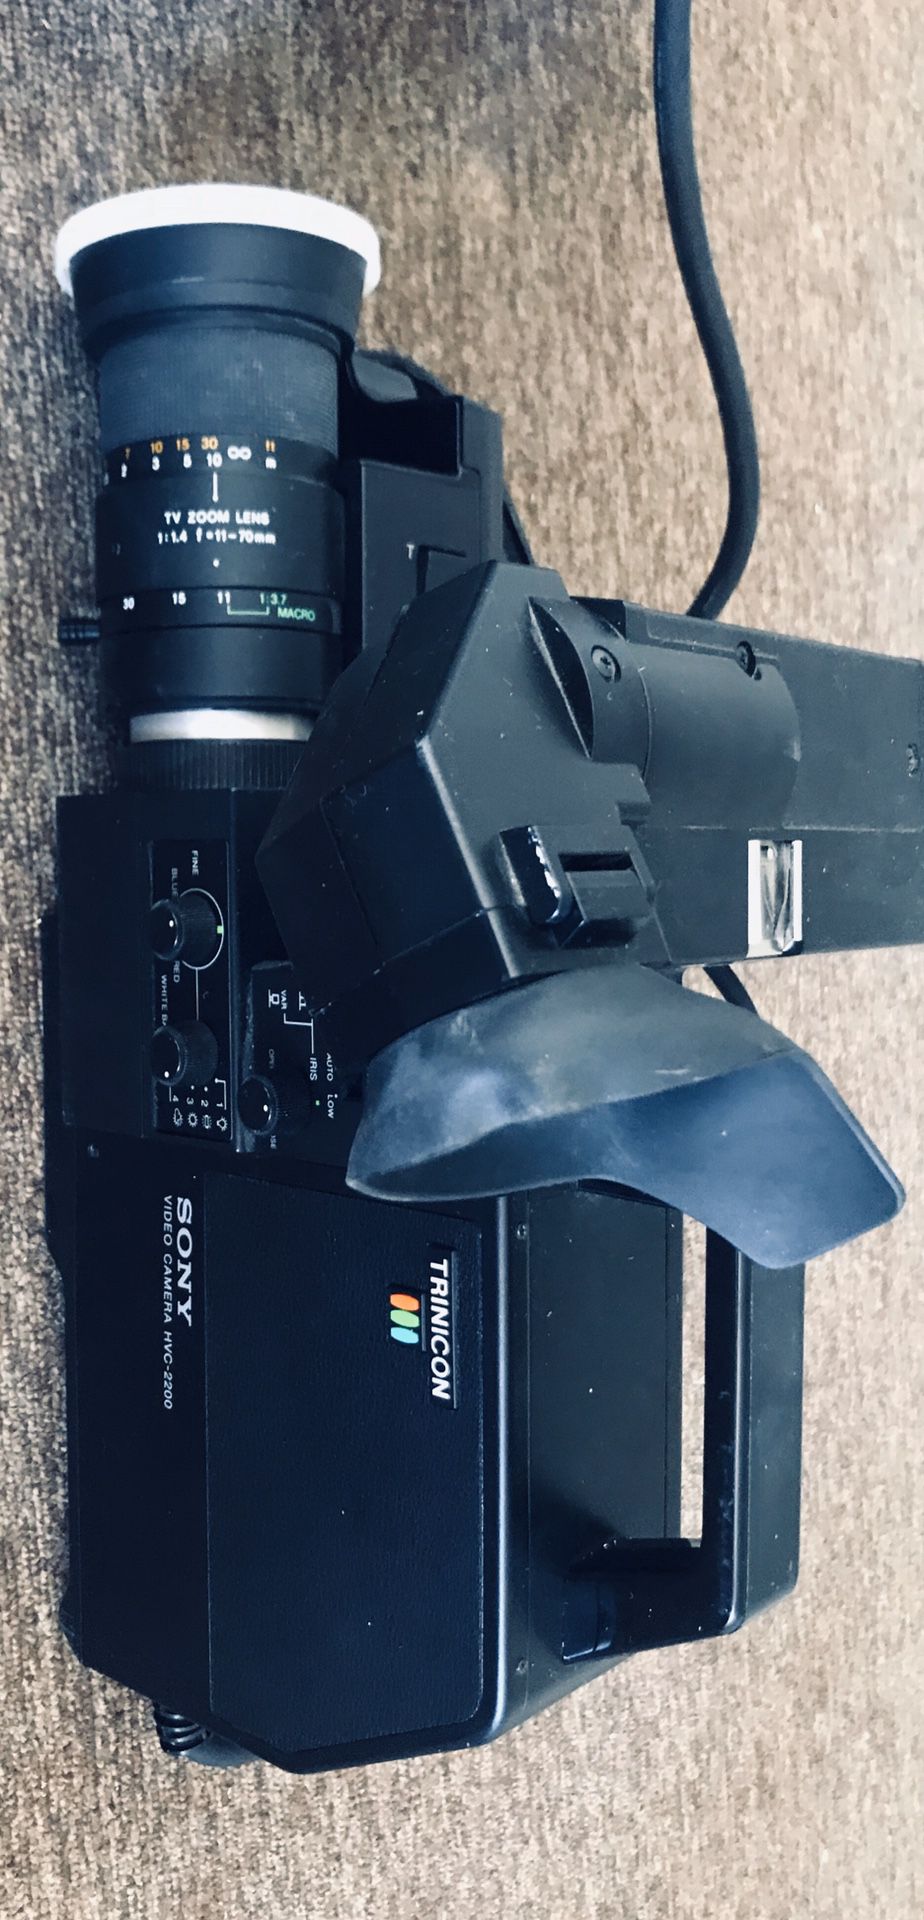 Video Camera Sony Trinicon HVC 2200 (vintage)